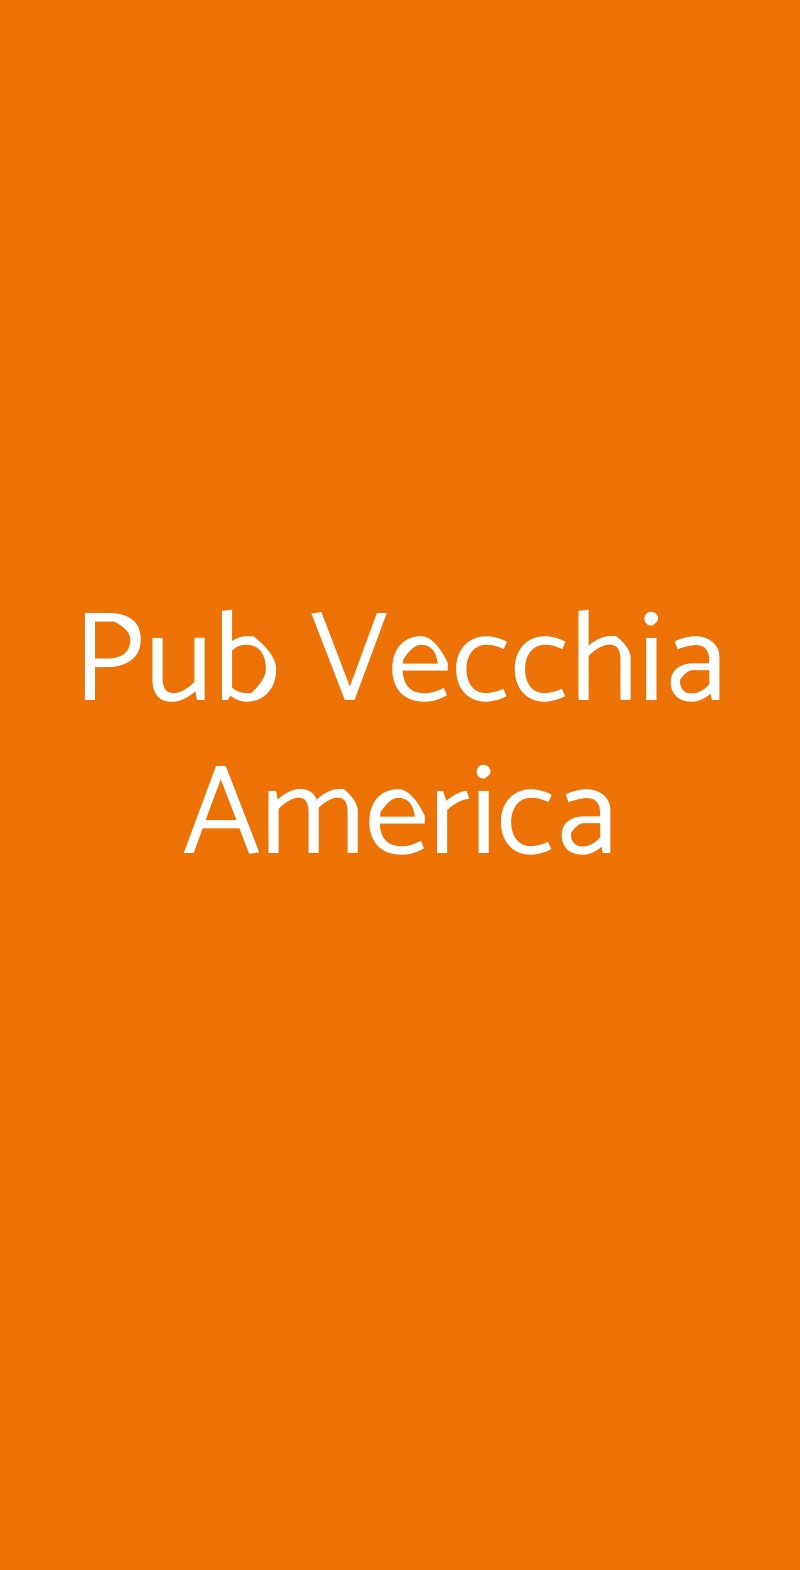 Pub Vecchia America Napoli menù 1 pagina